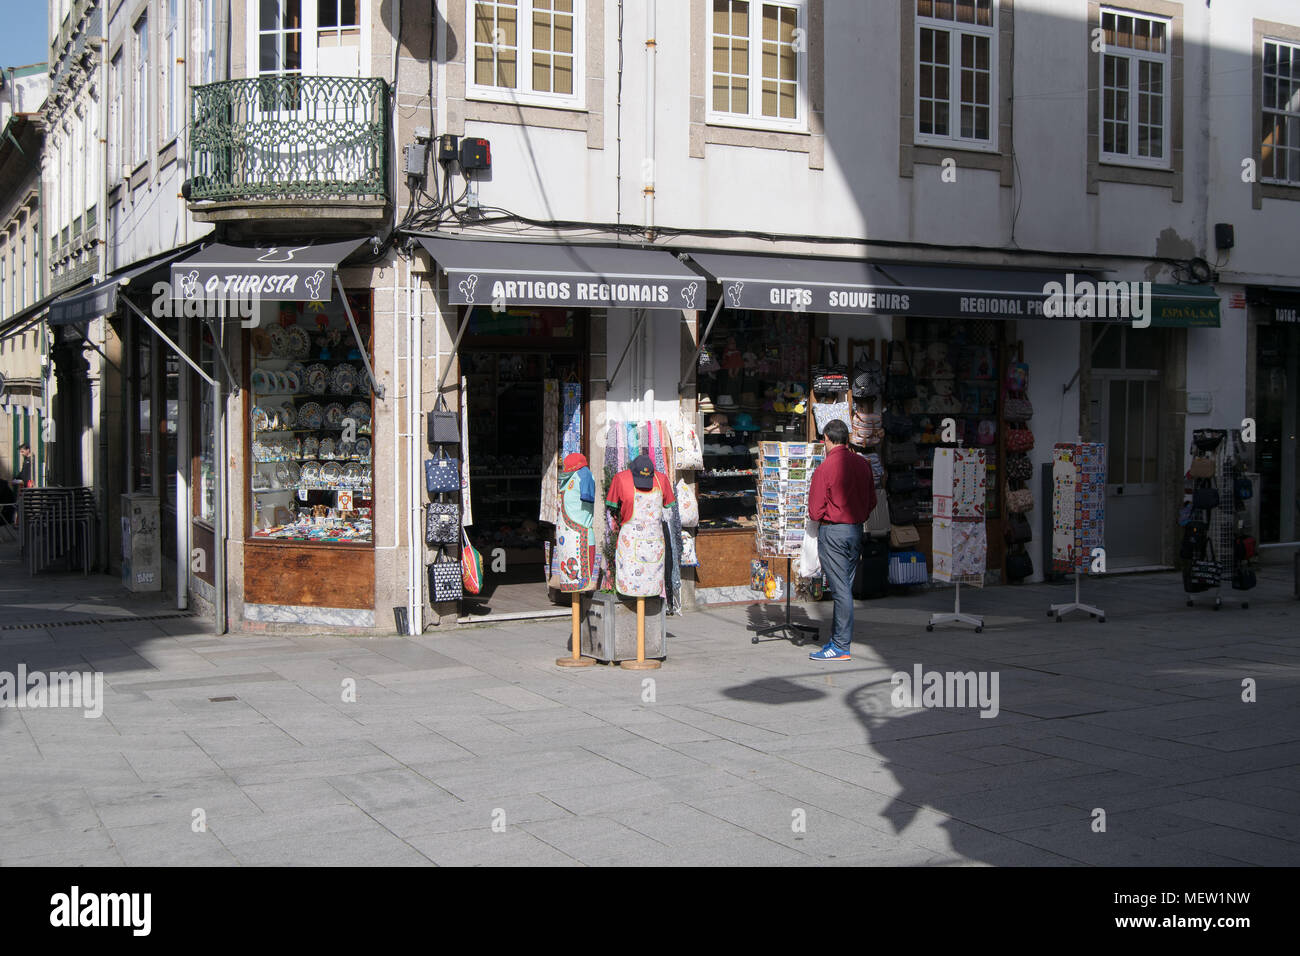 Touristic gift strore 'O turista' in Braga, Portugal Stock Photo